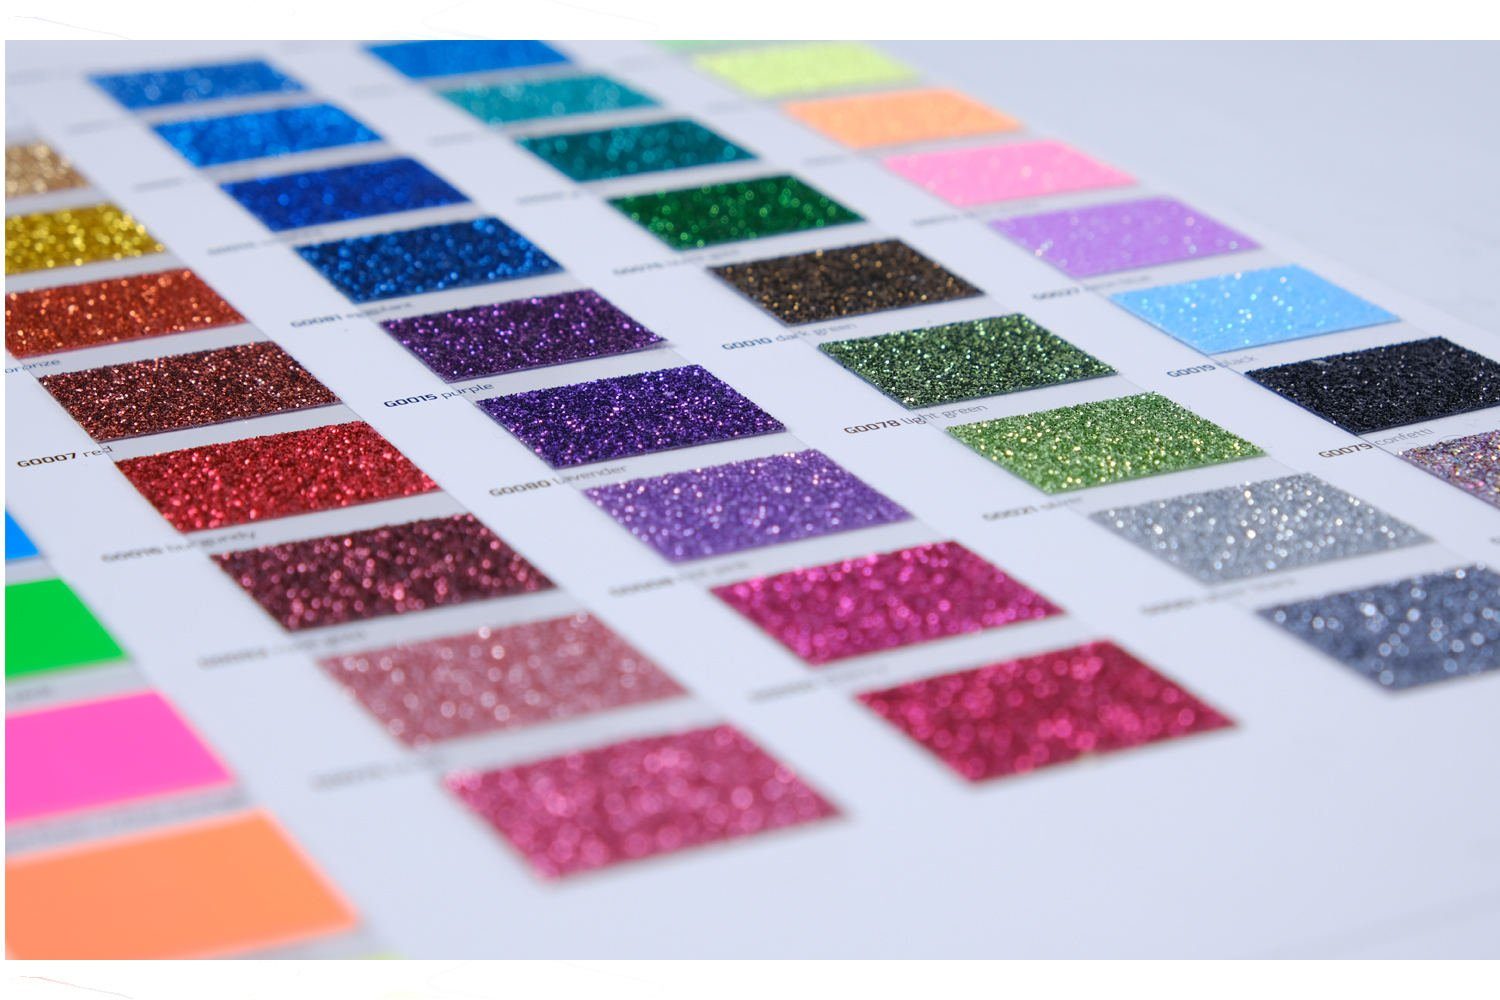 Hilltop Transparentpapier Glitzer Transferfolie/Textilfolie zum zum Hot Pink Aufbügeln, perfekt Plottern